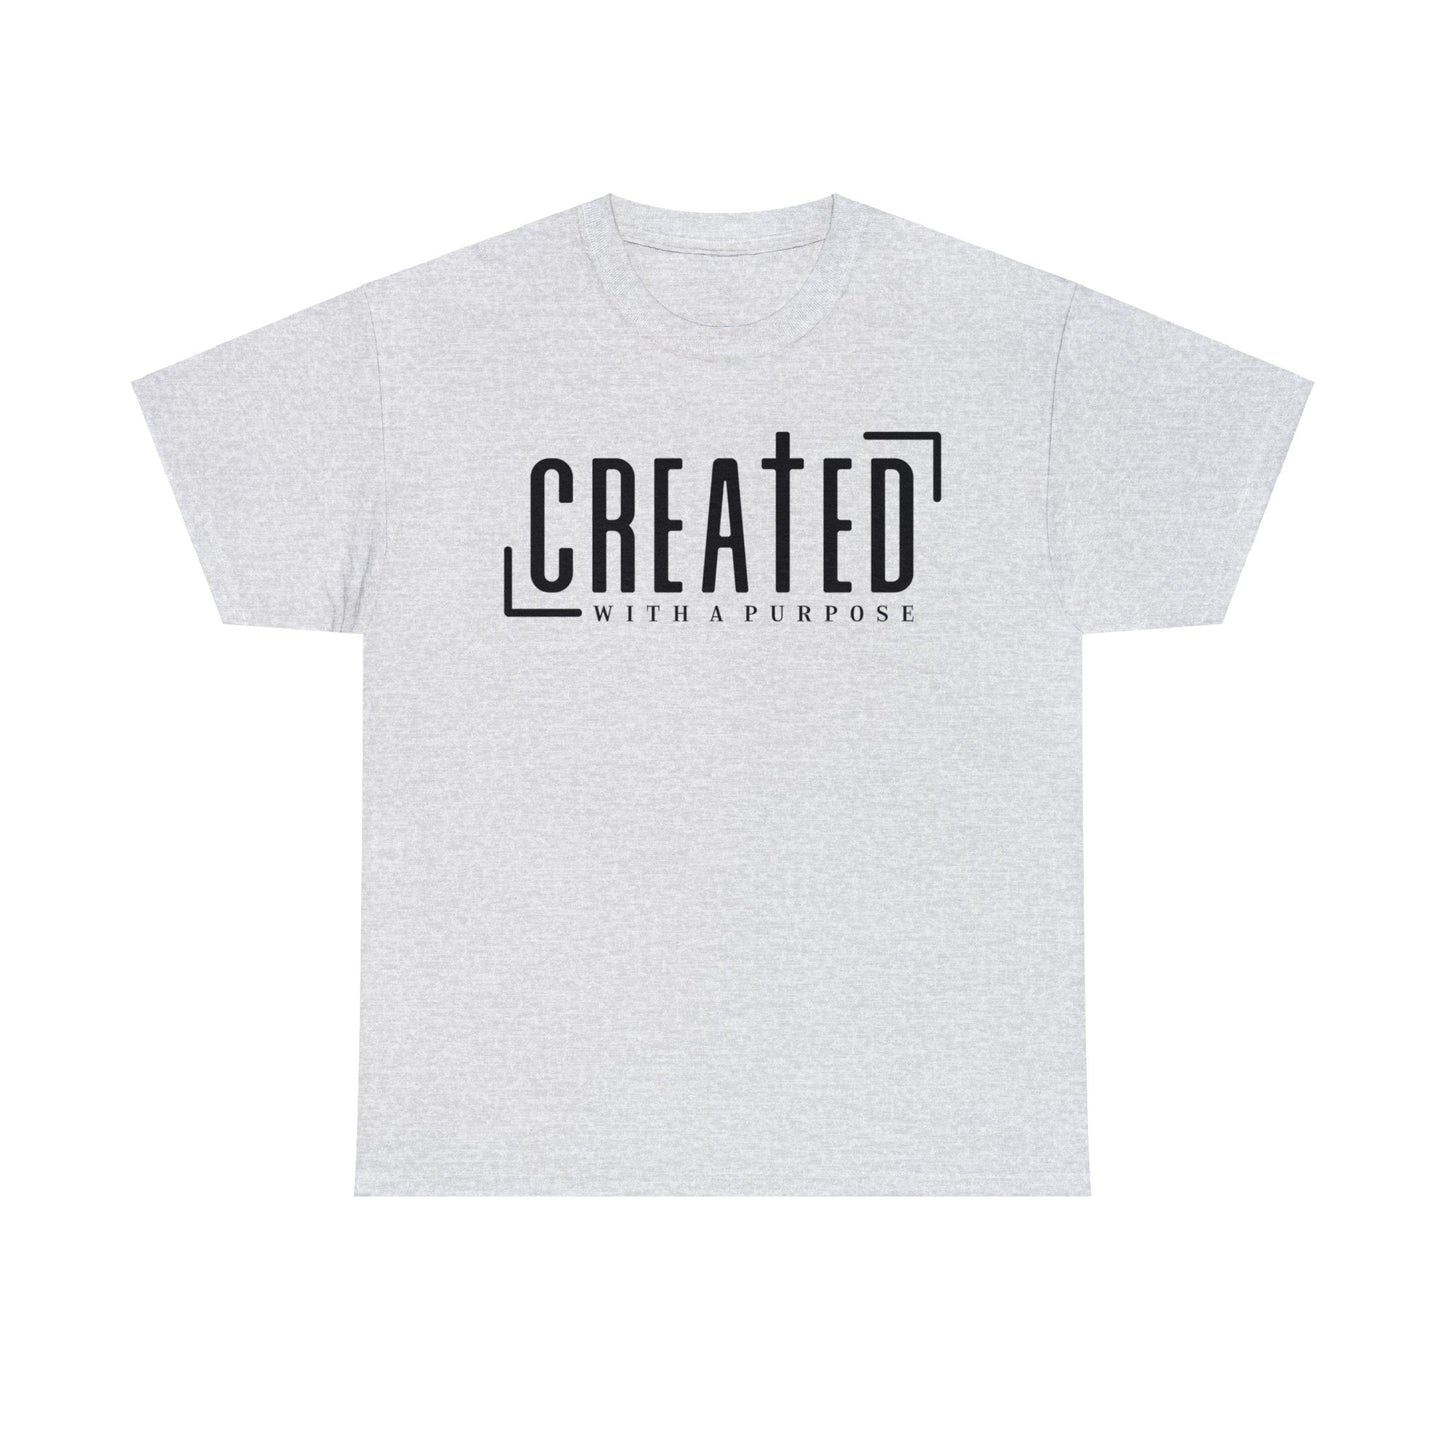 Created With A Purpose Shirt, Christian Shirt, Religious Shirt, Faith Tee (Faith-23)